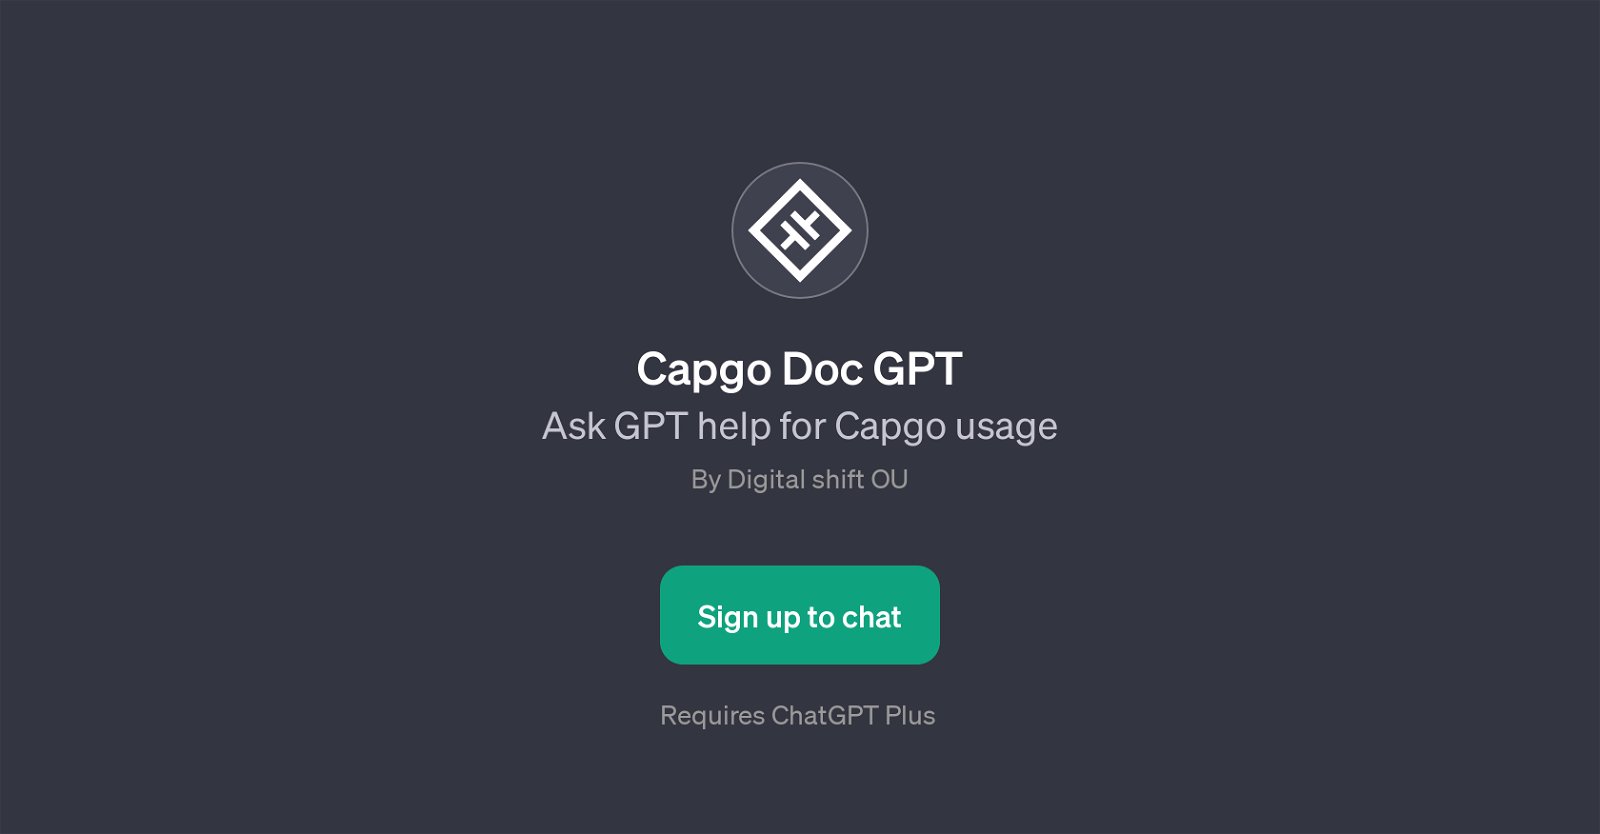 Capgo Doc GPT website